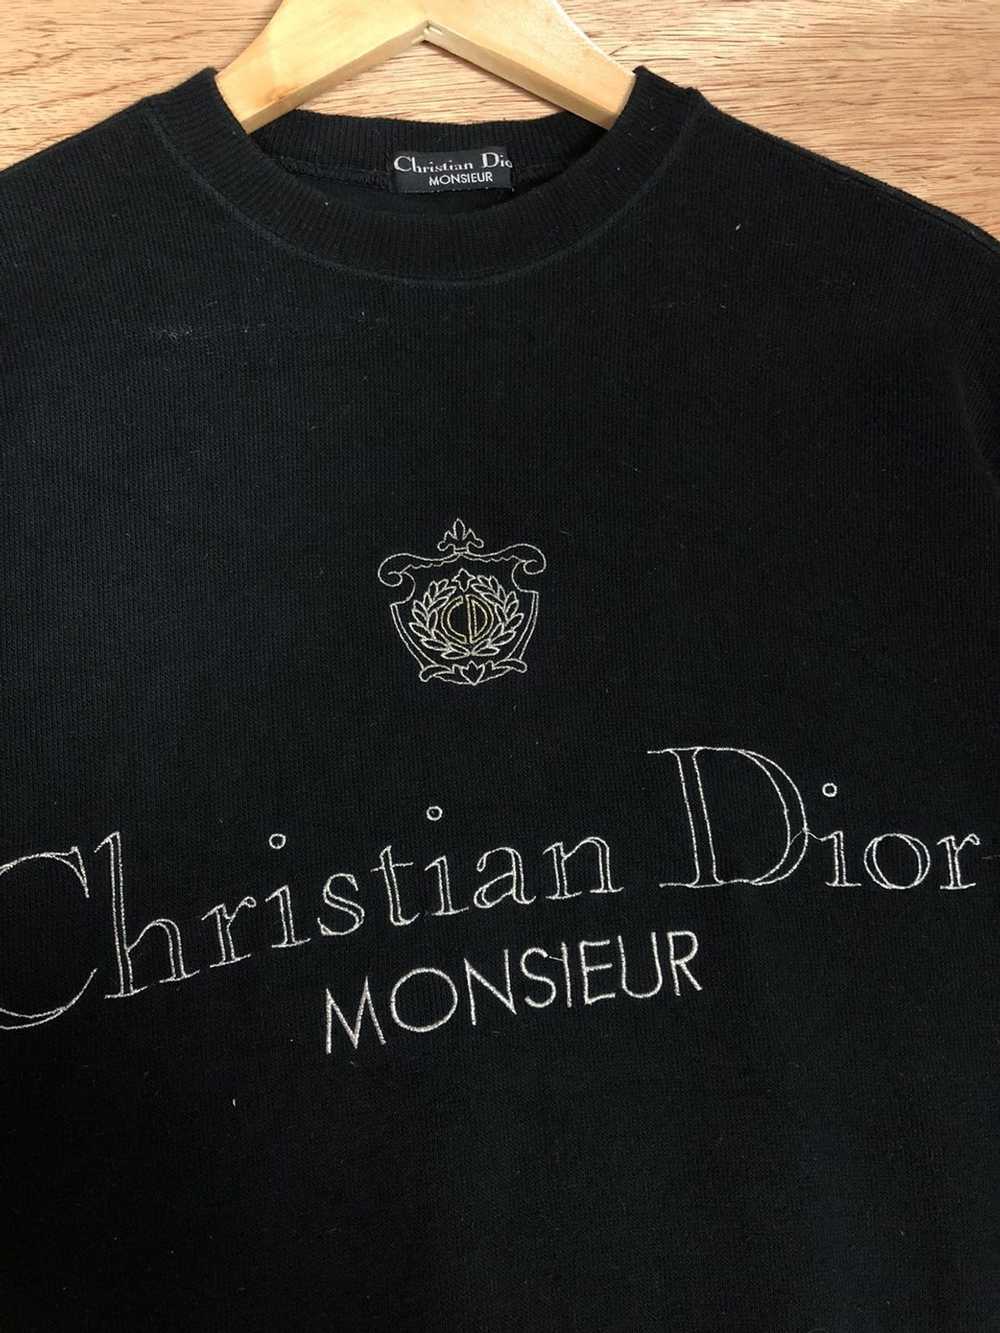 Christian Dior Monsieur Vintage Christian Dior Sp… - image 5